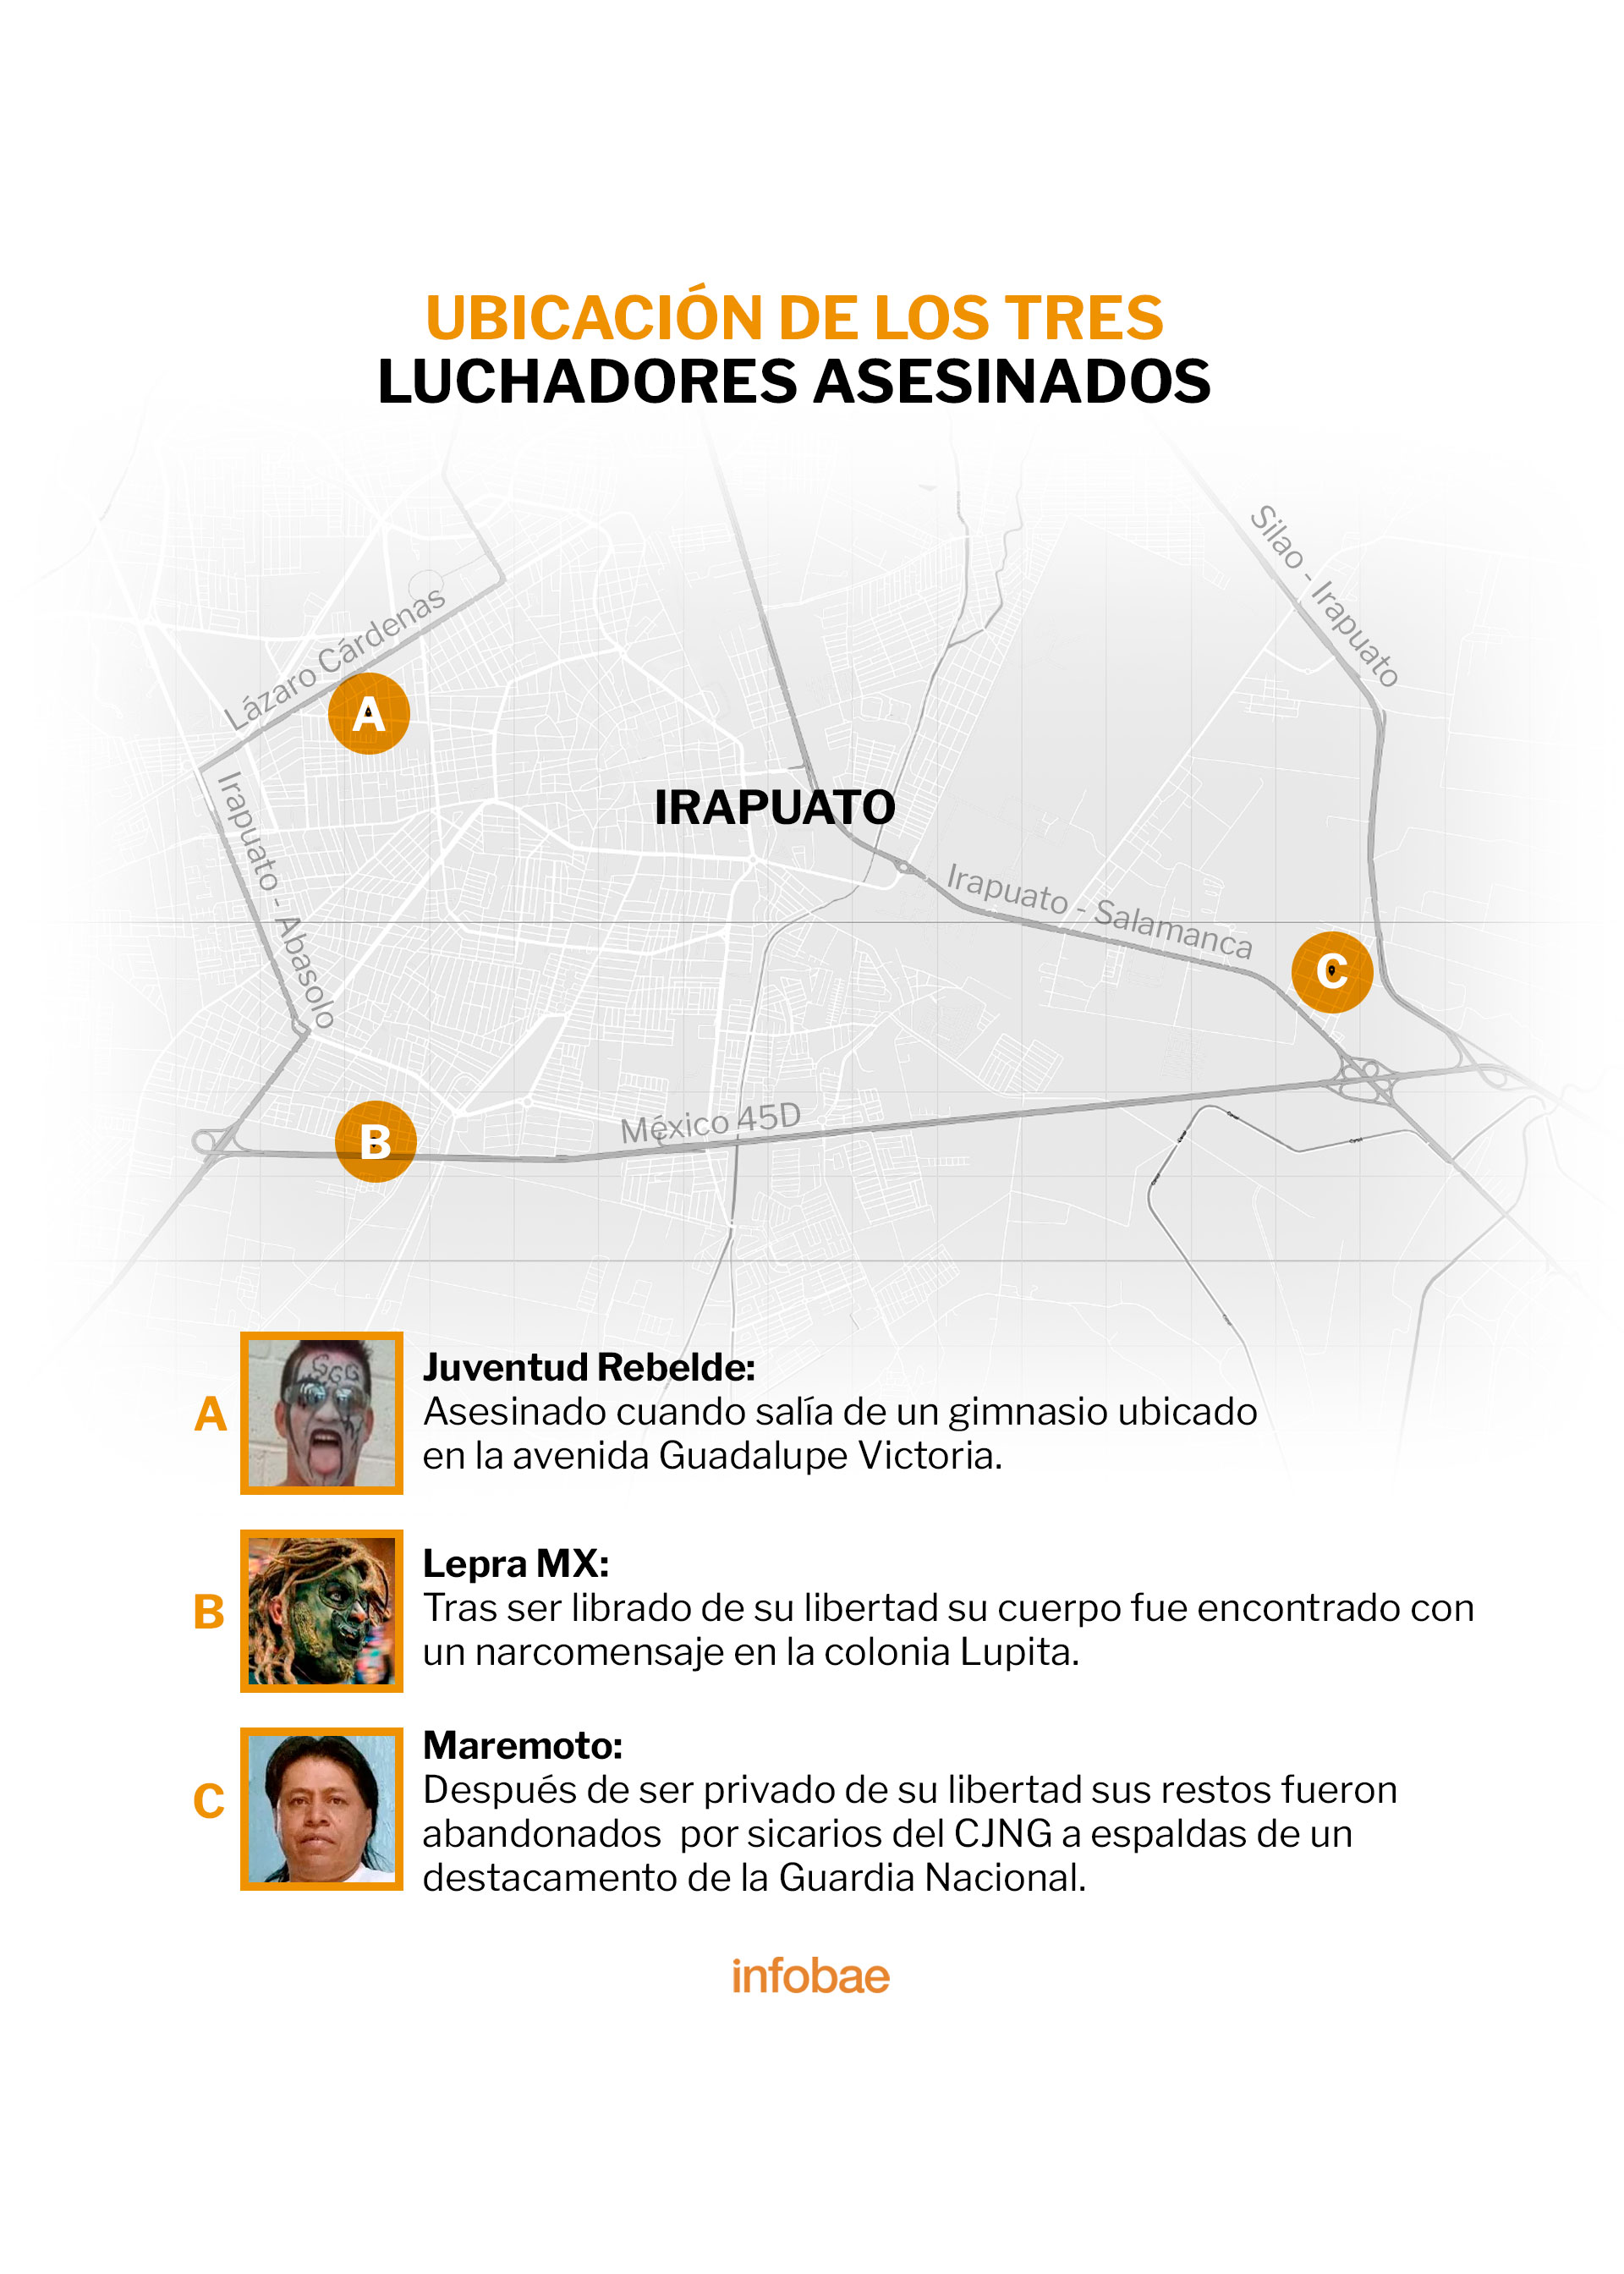 Los restos de los luchadores fueron encontrados en distintos puntos del municipio (Infografía: Infobae México / Jovani Pérez)